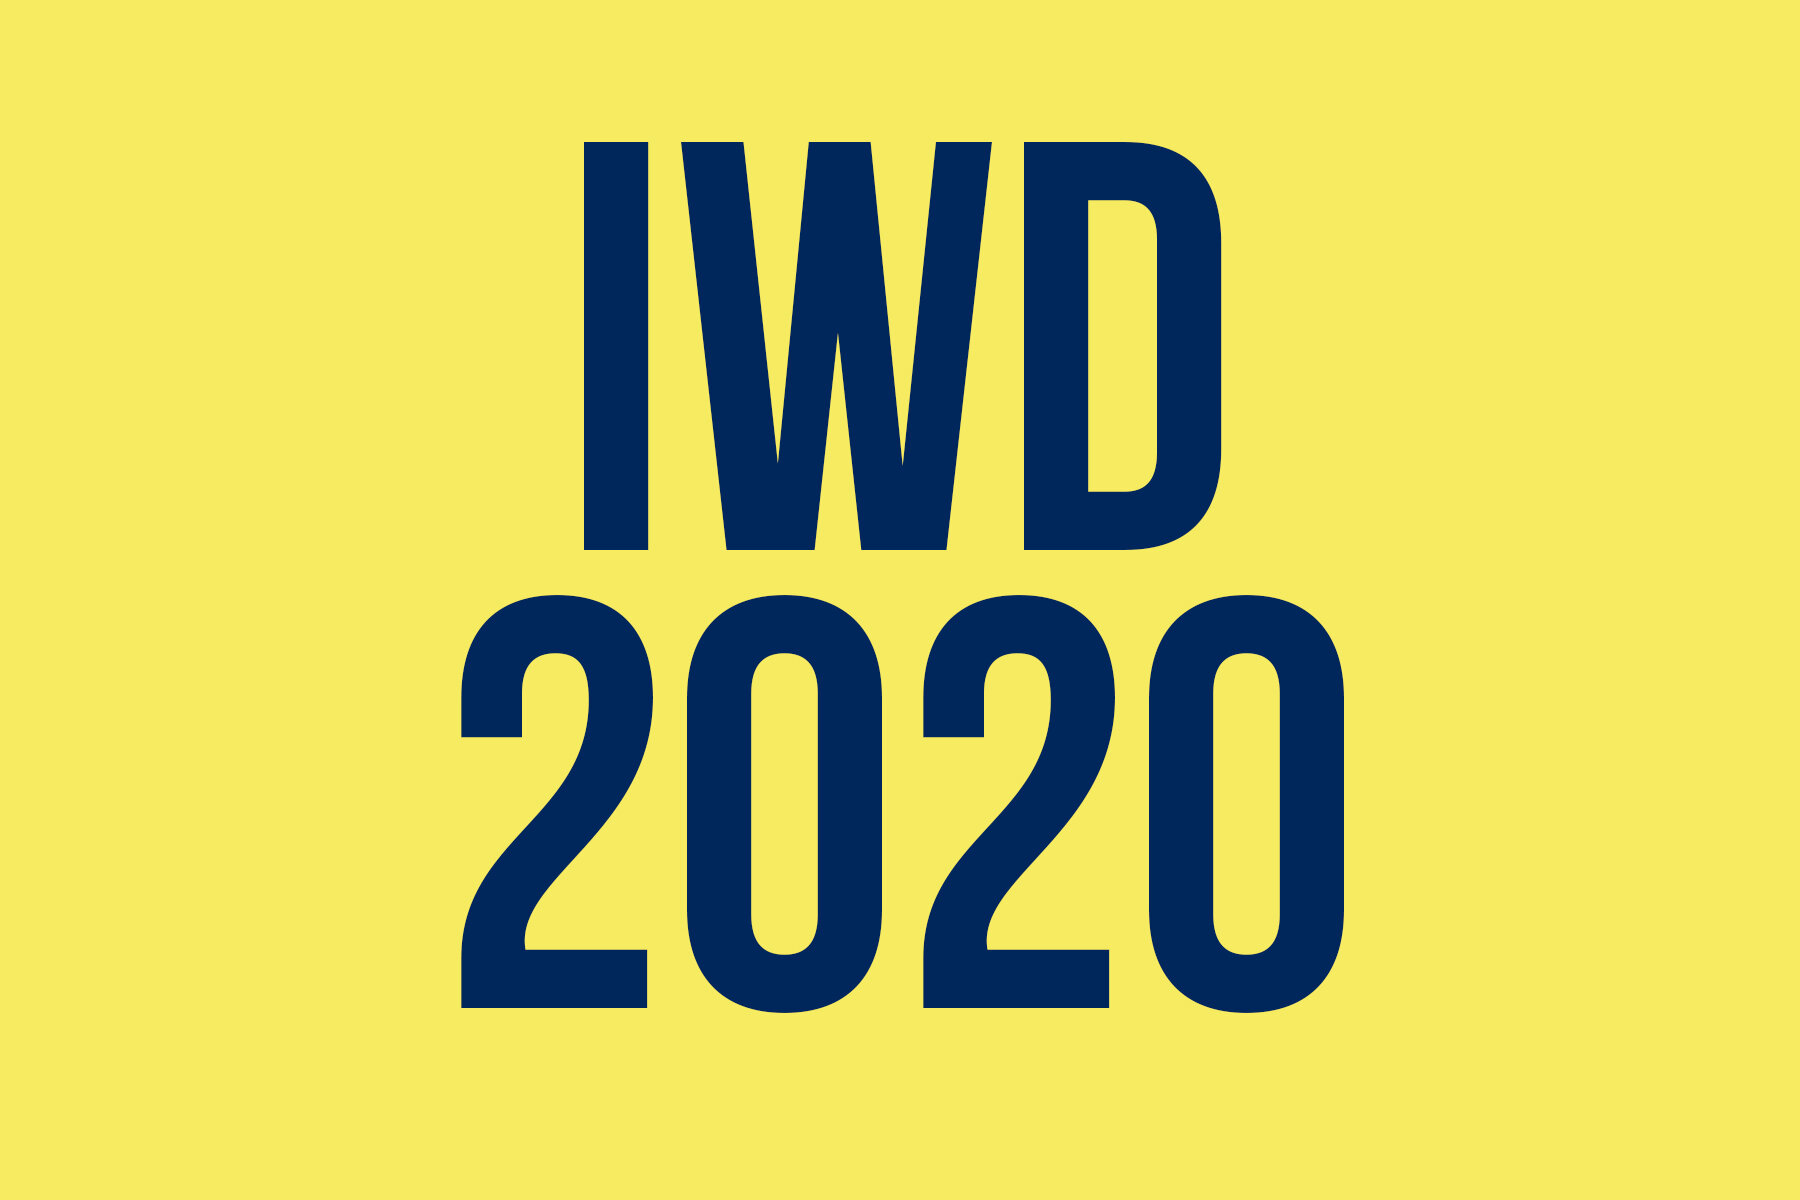 iwd-2020.jpg